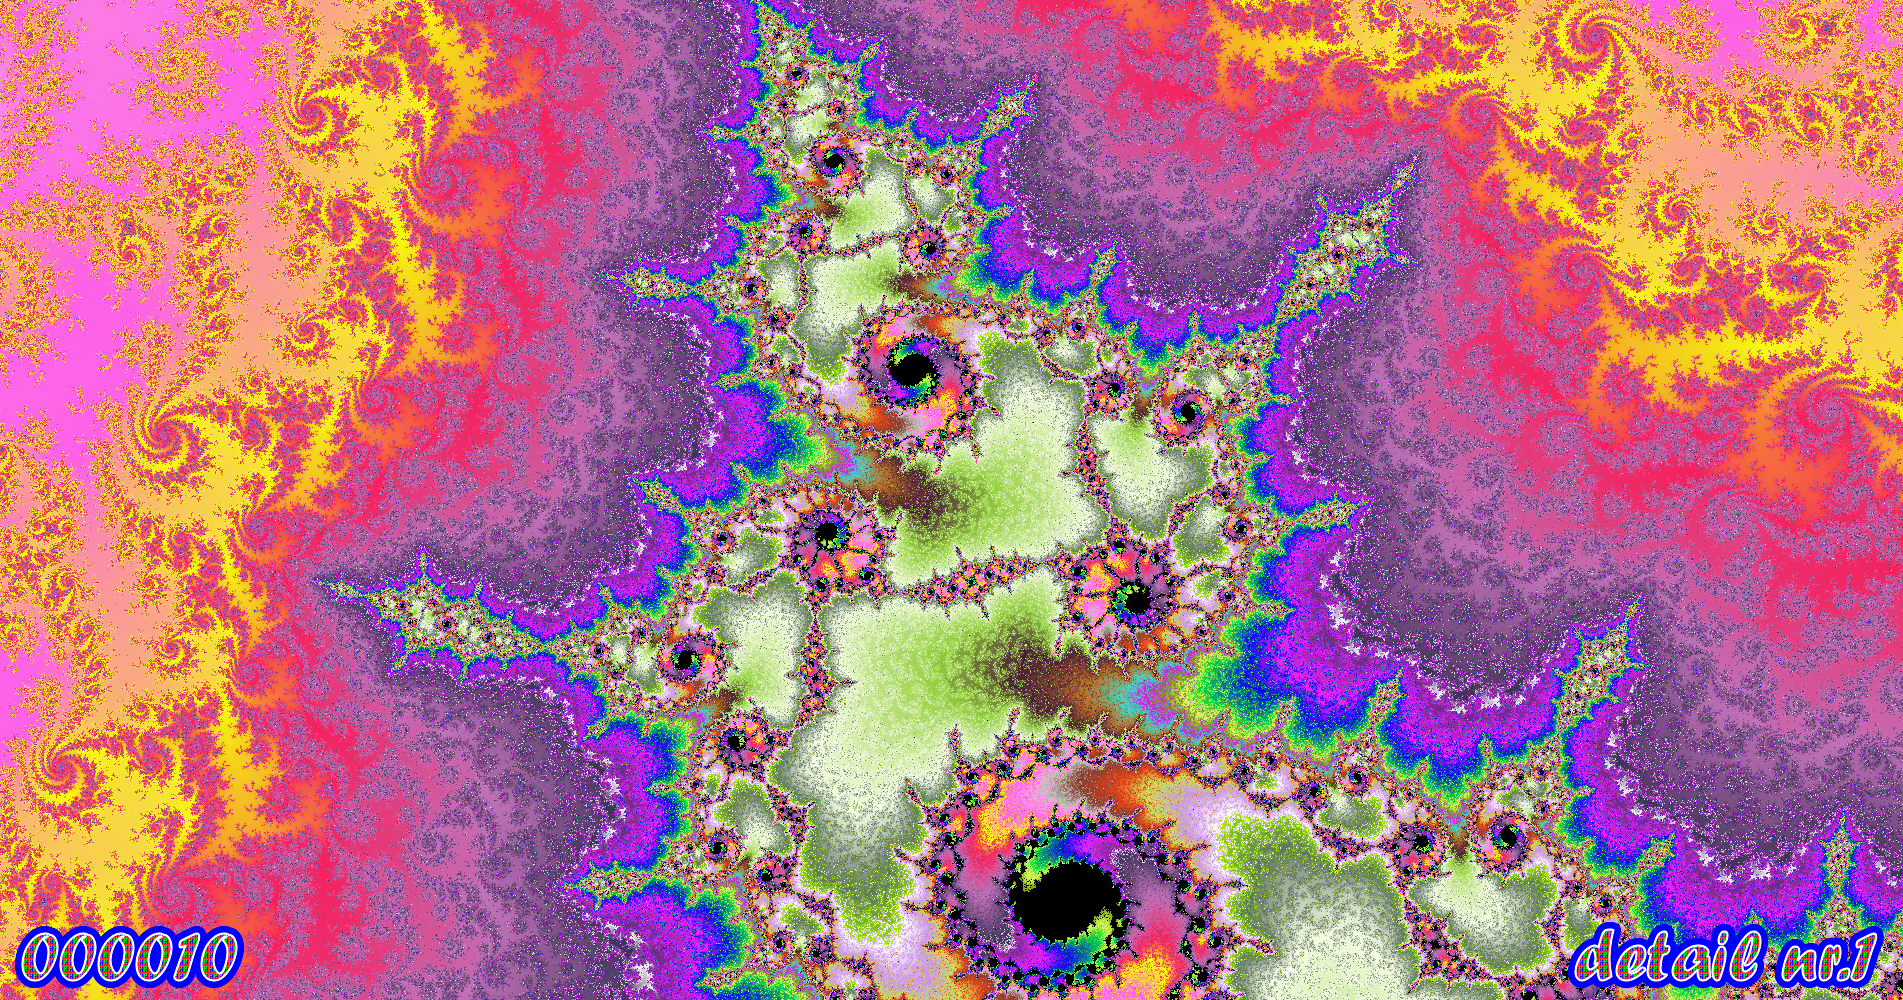 fractal kunst nr. 000010 ,detail nr. 1